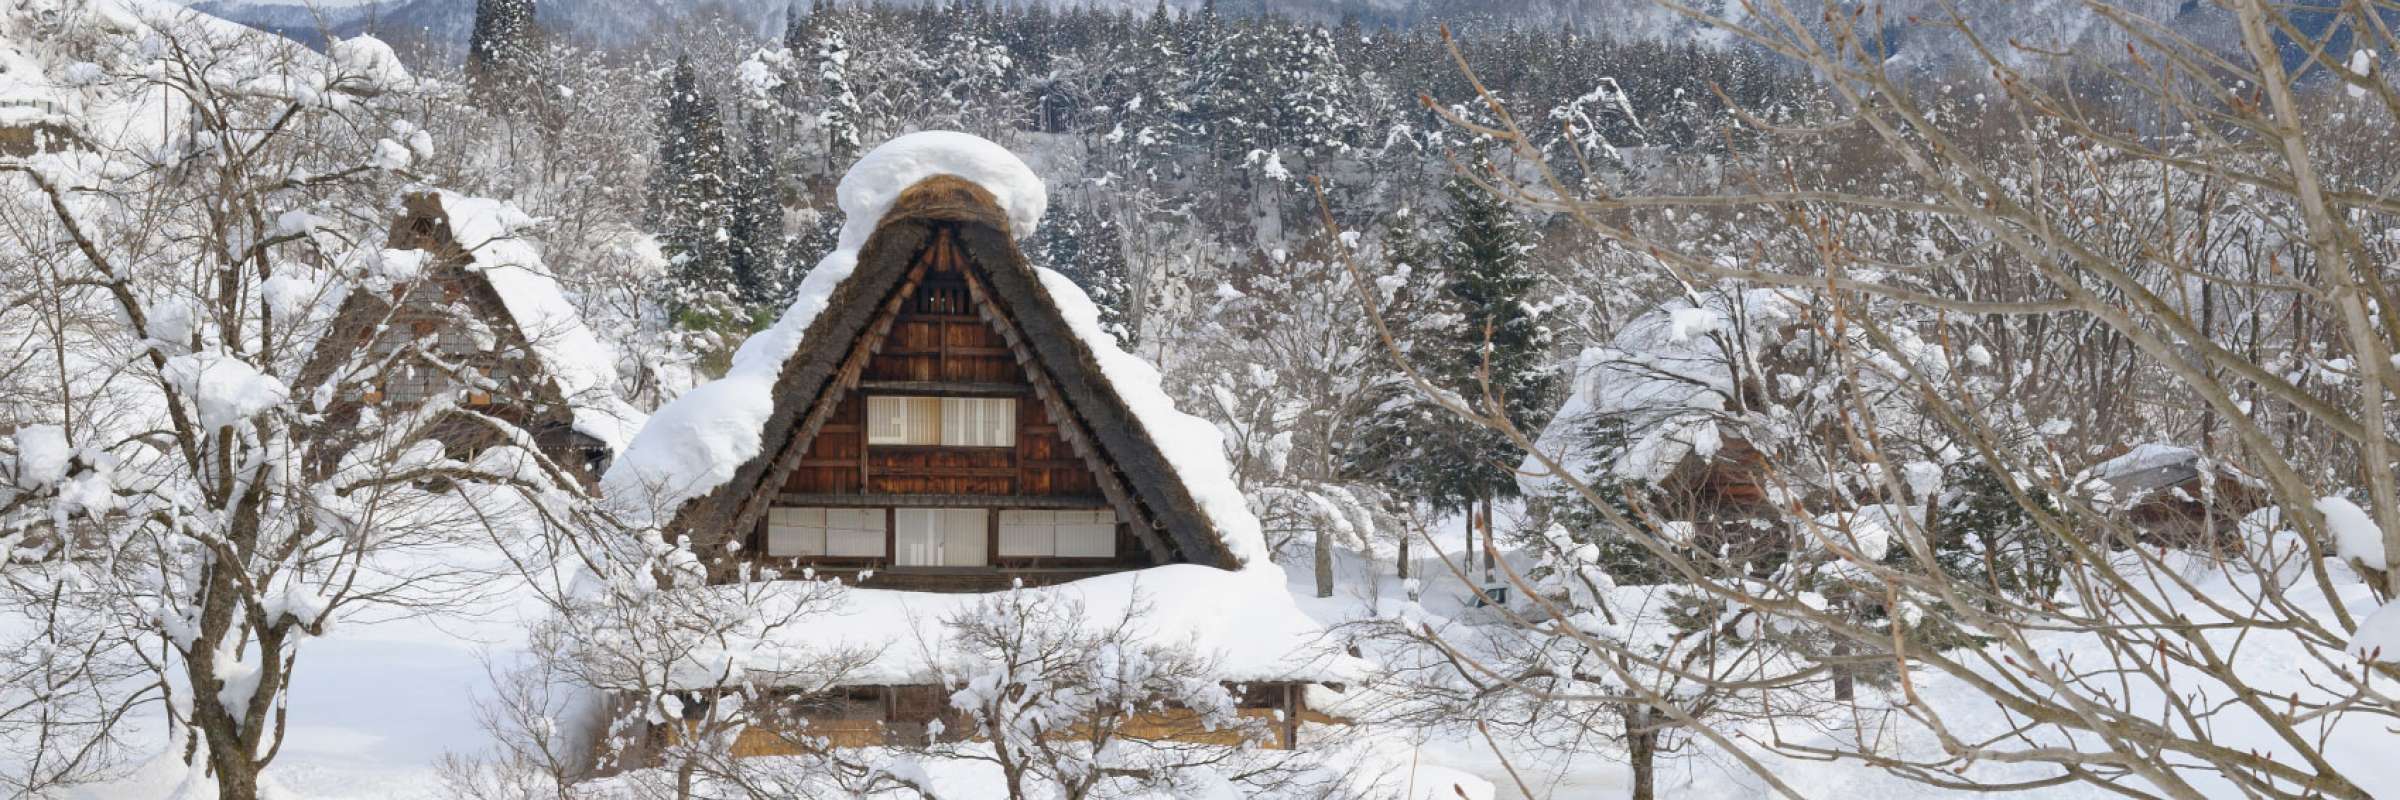 Cấu trúc nhà đặc biệt chống chọi tuyết lớn